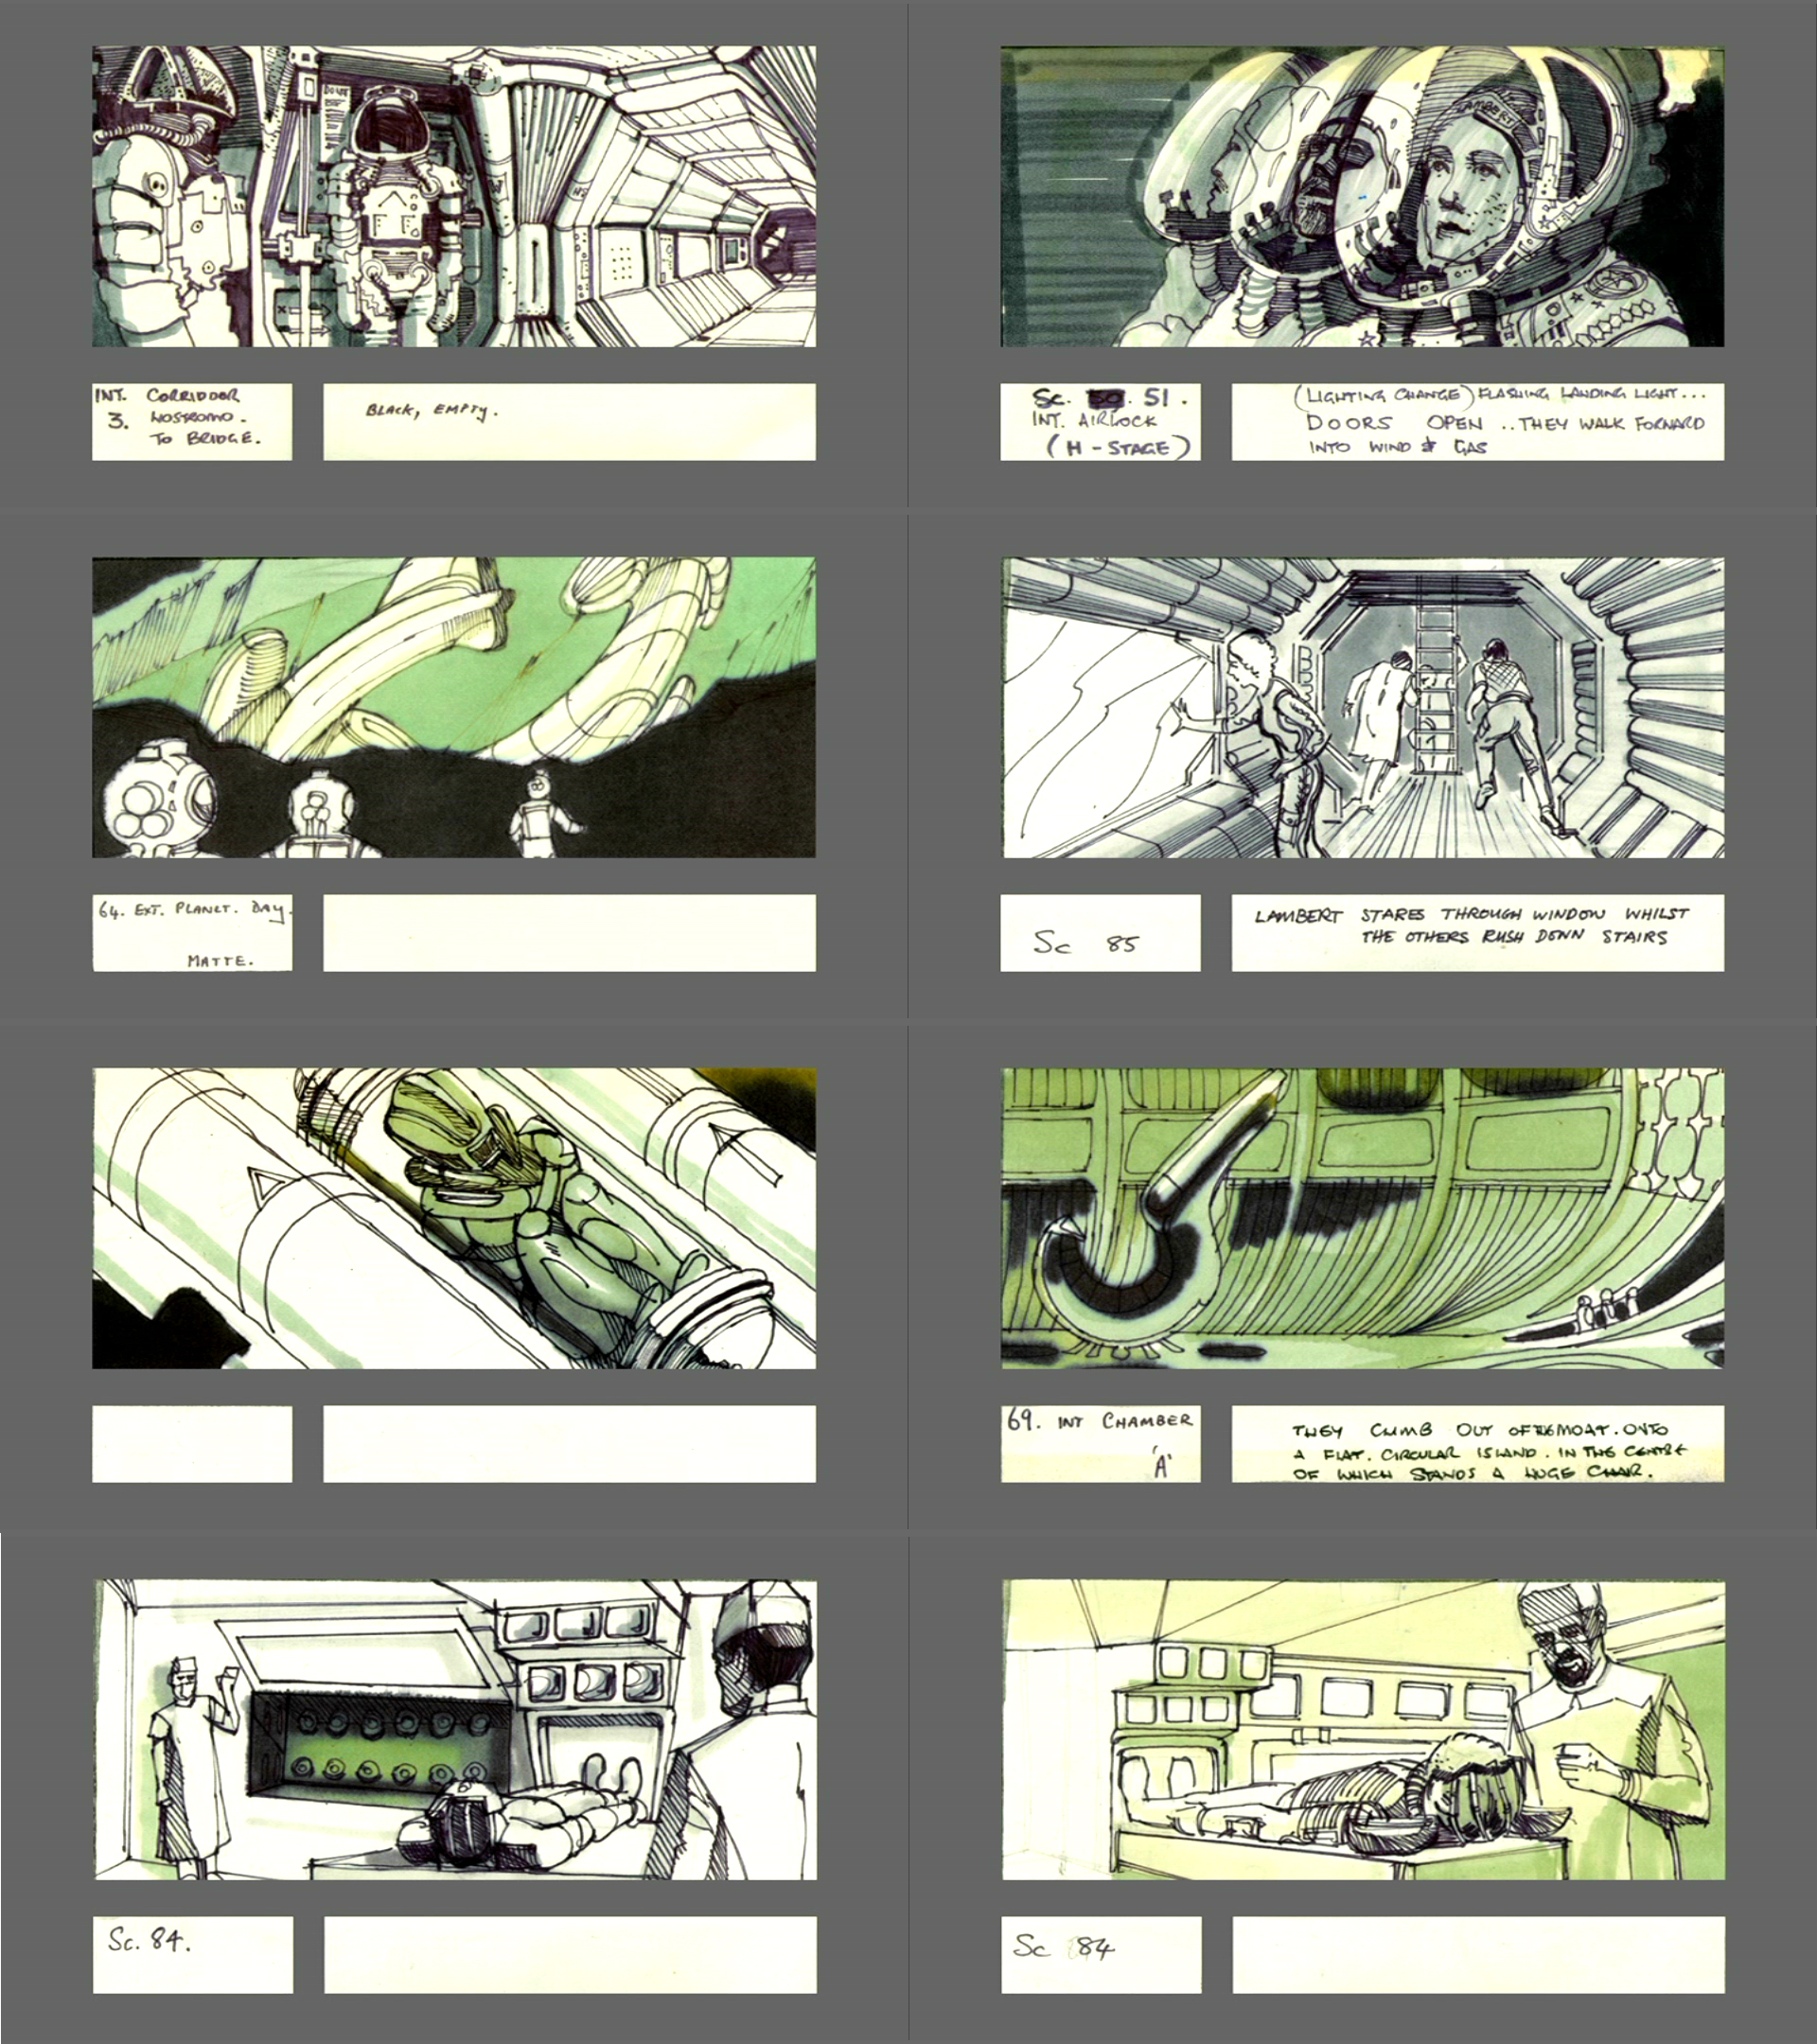 Desenhos do Storyboard feitos por Ridley Scott, com um visual muito inspirado pelo artista Moebius, e pelos quadrinhos “Heavy Metal”. Ao ver estes desenhos, fico com vergonha dos meus storyboards.